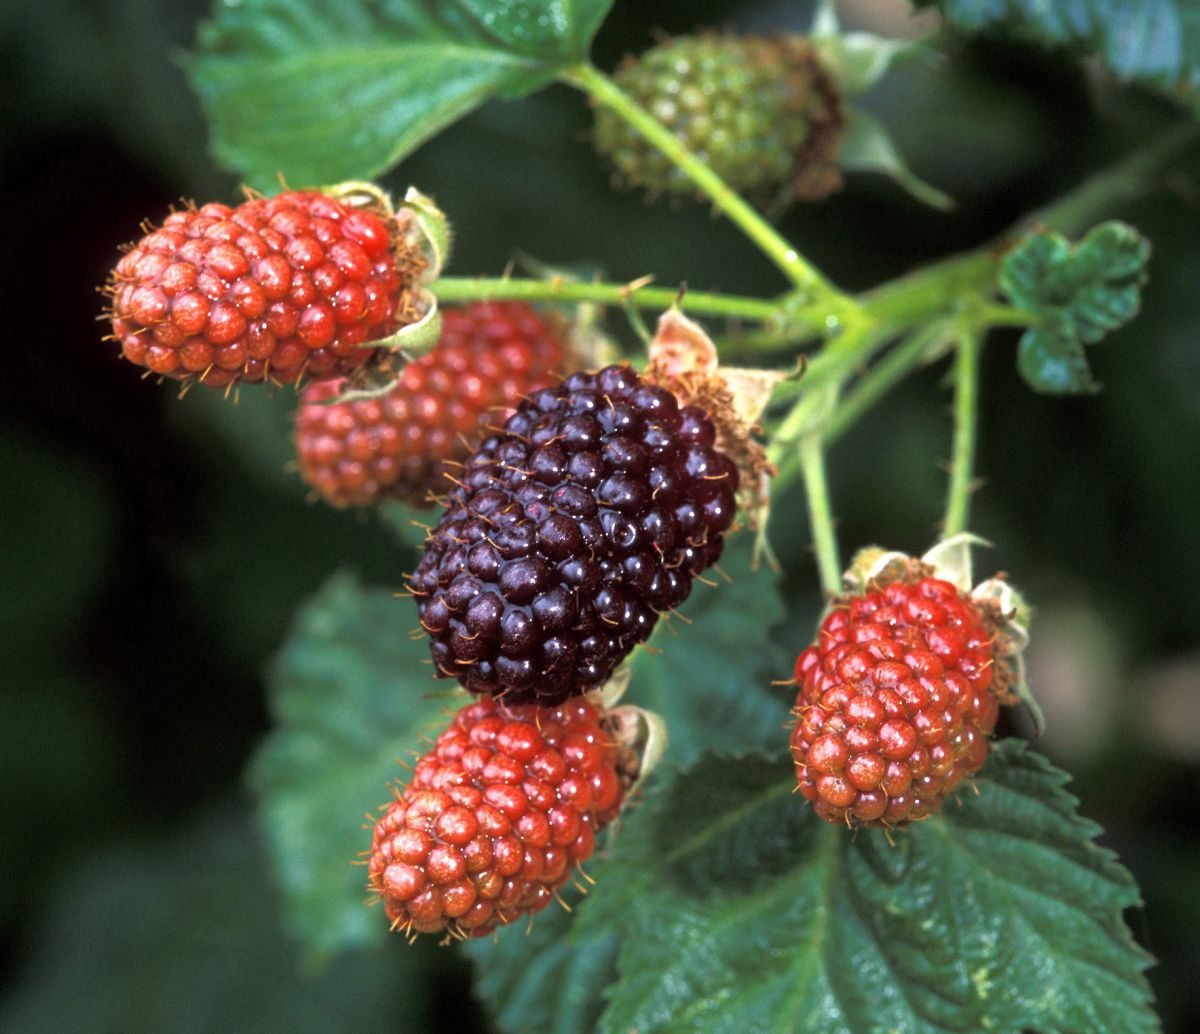 Blackberry fruit on plant